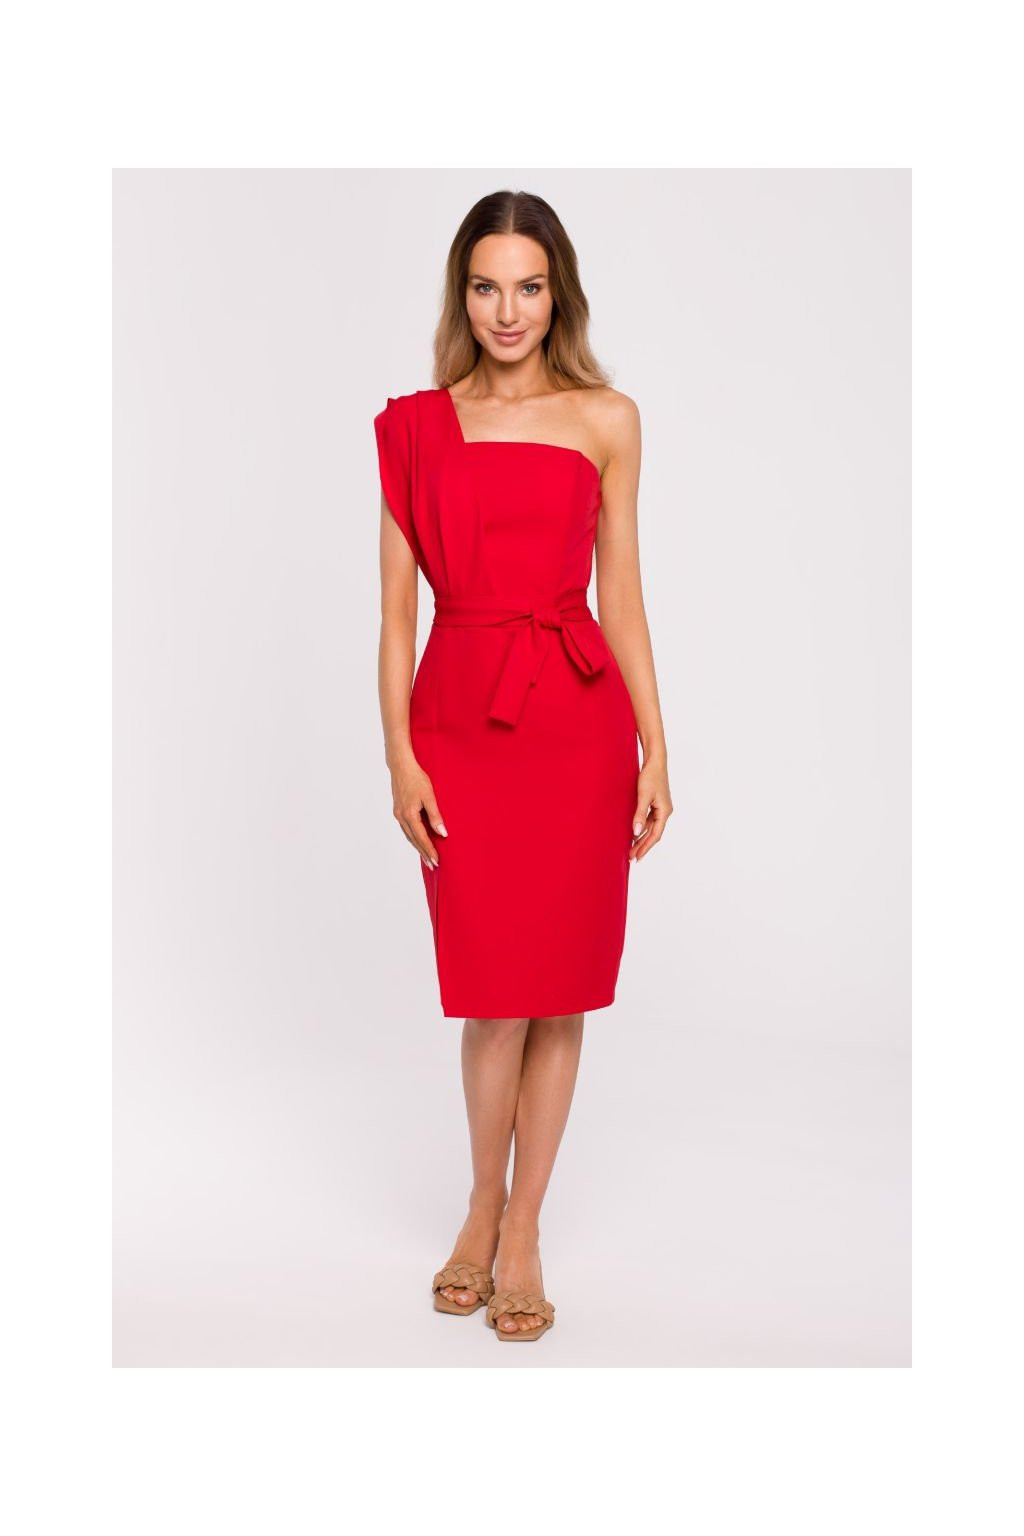 Dámské šaty model 18124465 červené - Moe Velikost: M, Barvy: červená